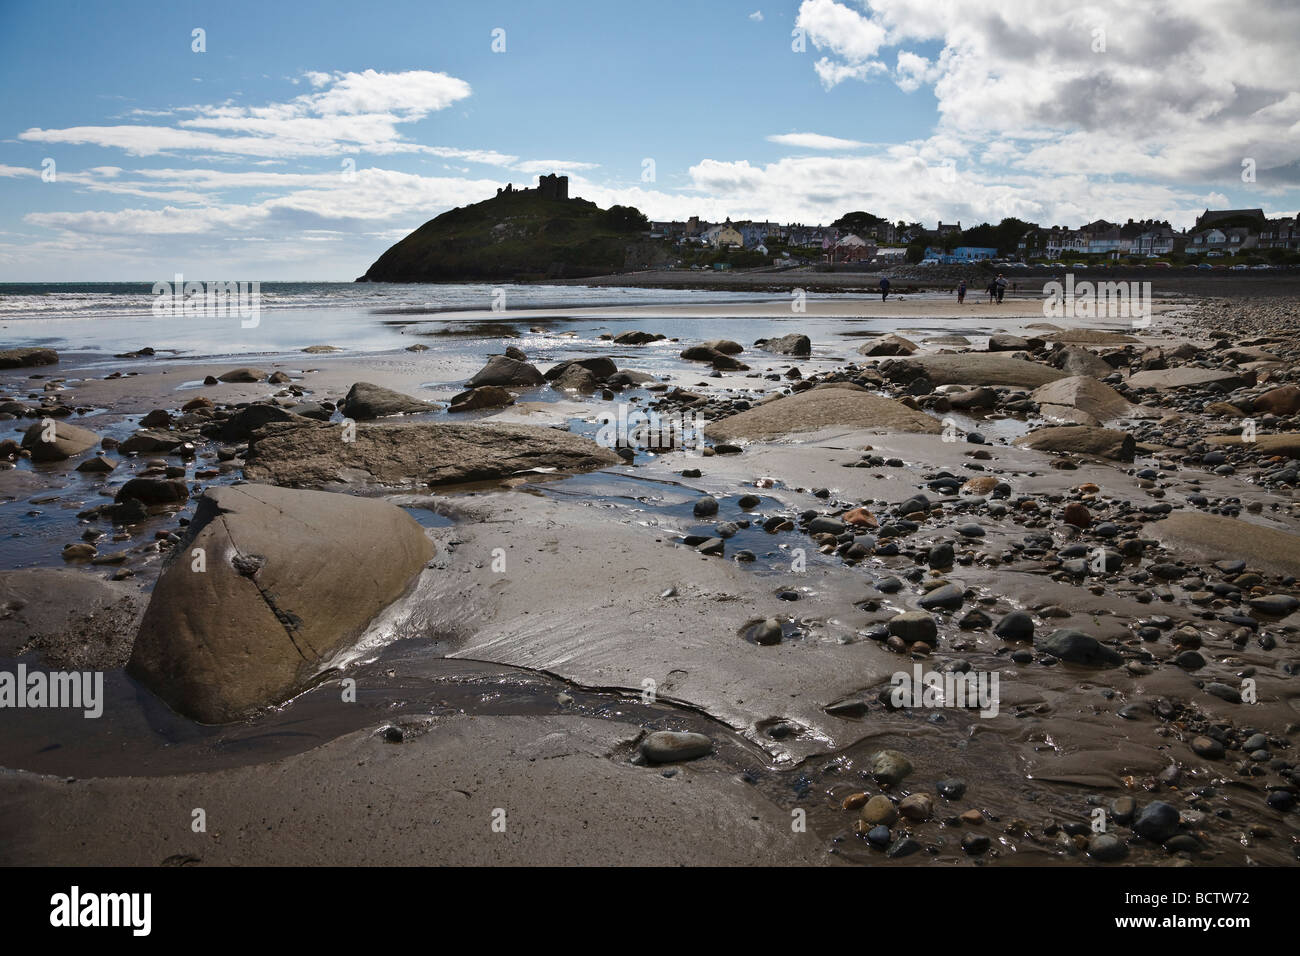 Criccieth beach and castle, Gwynedd, Wales Stock Photo